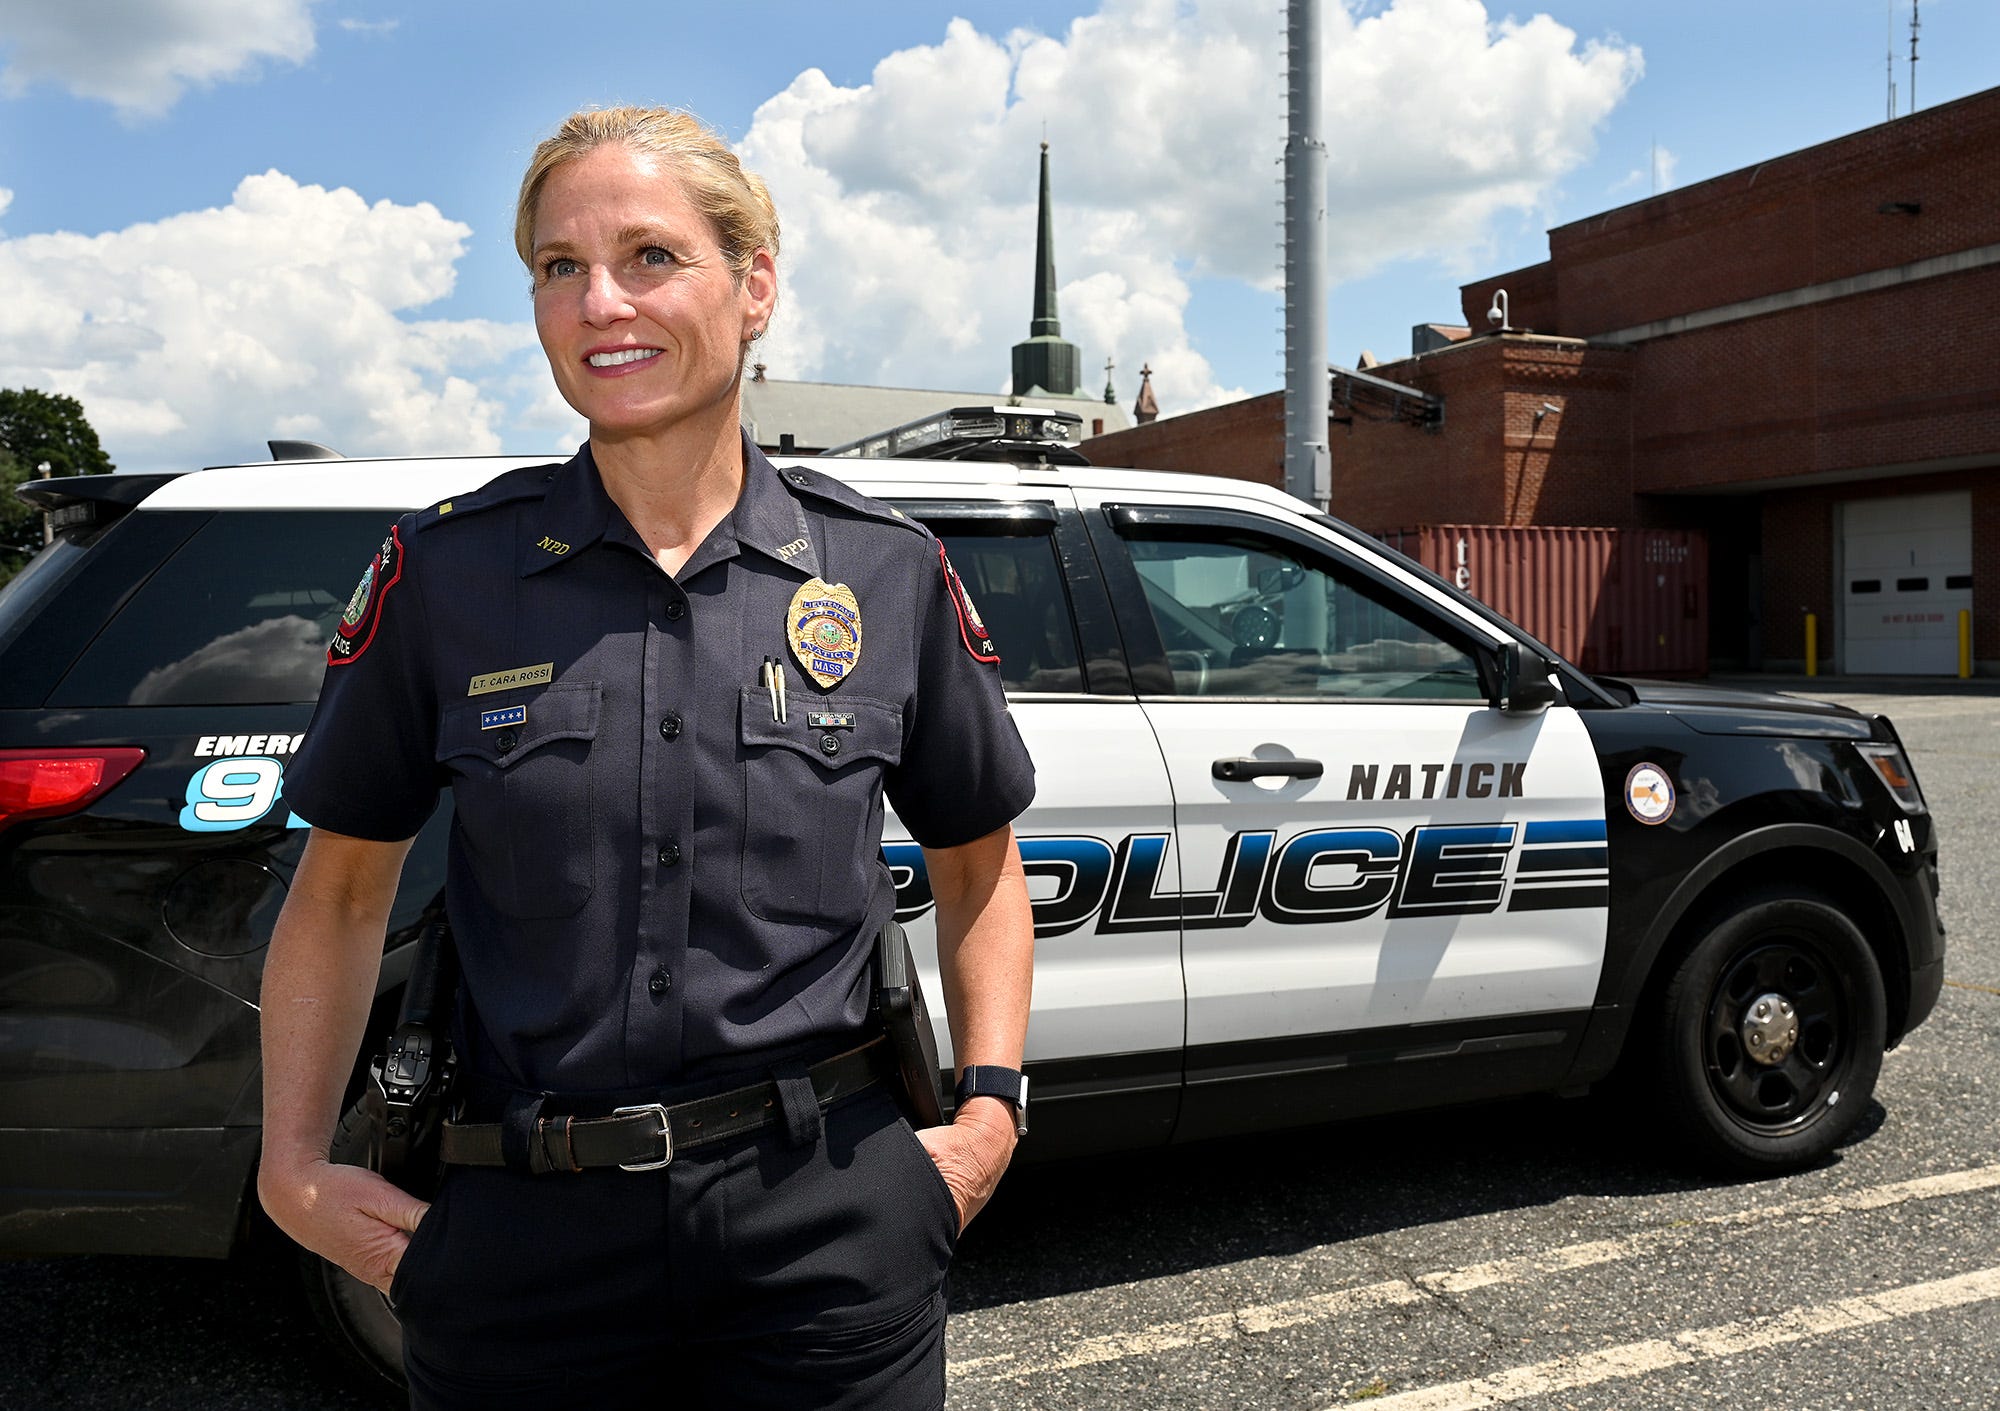 Female Police